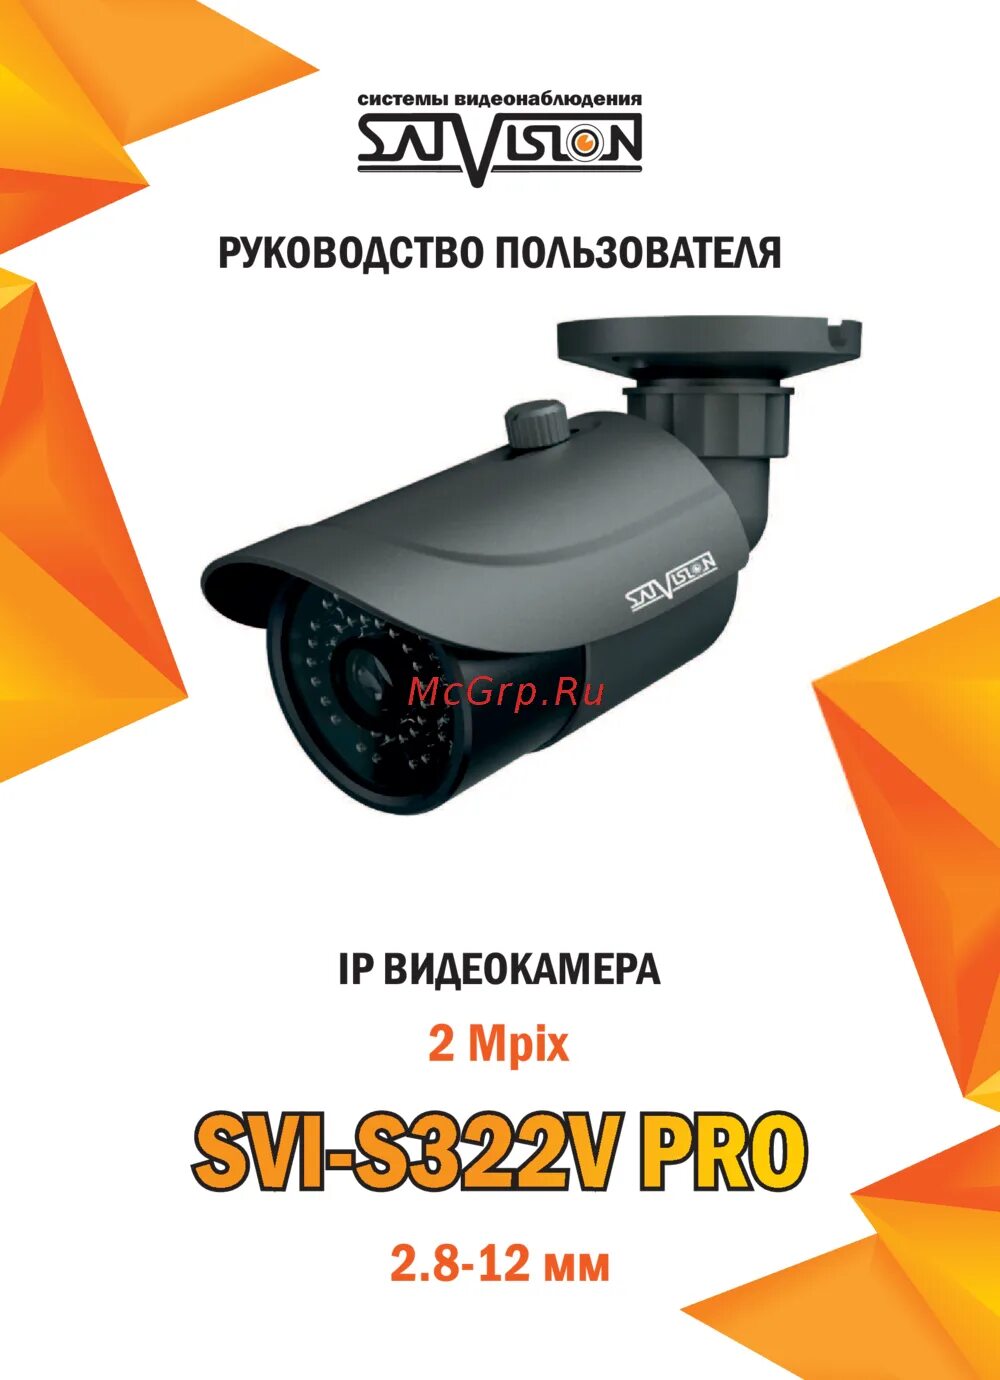 Svi-s322v. Svi-s352v Pro. Satvision svi камера инструкция. Камера Satvision уличная 5мп.